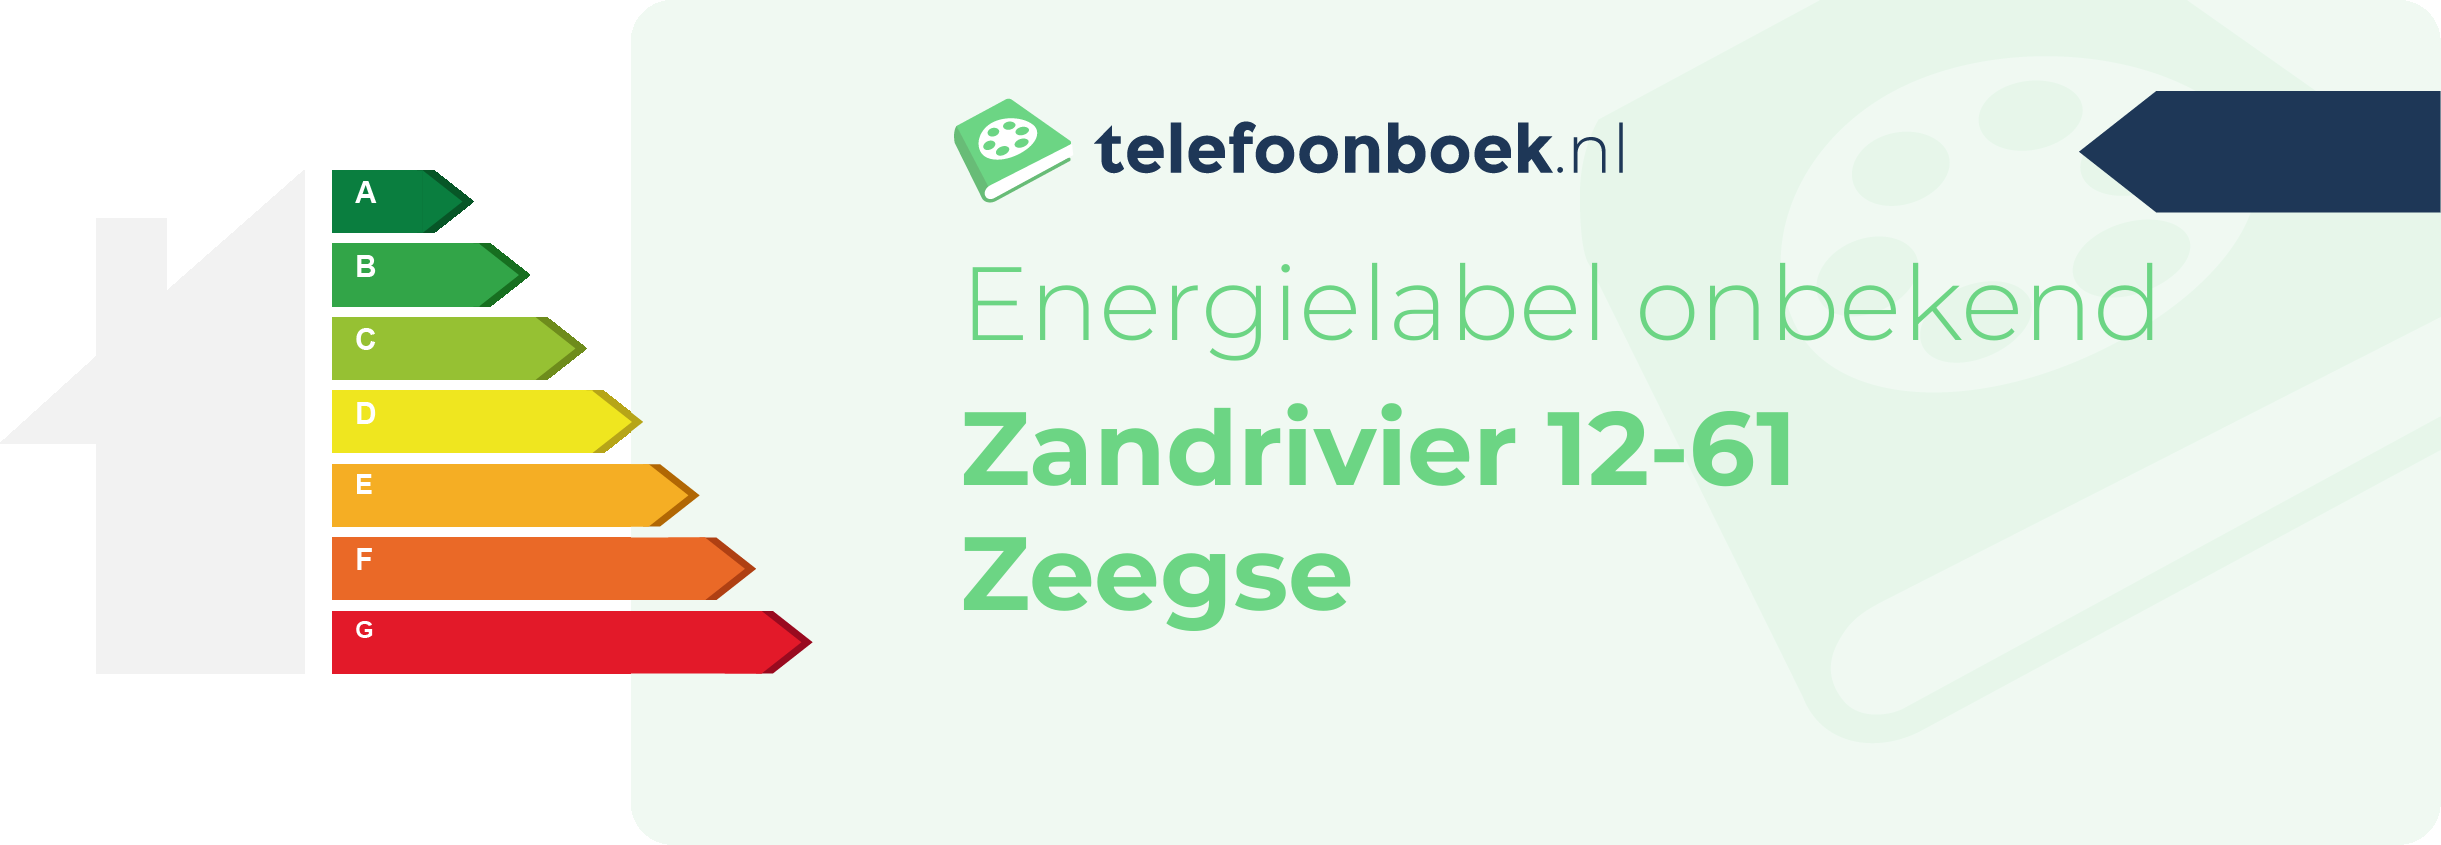 Energielabel Zandrivier 12-61 Zeegse